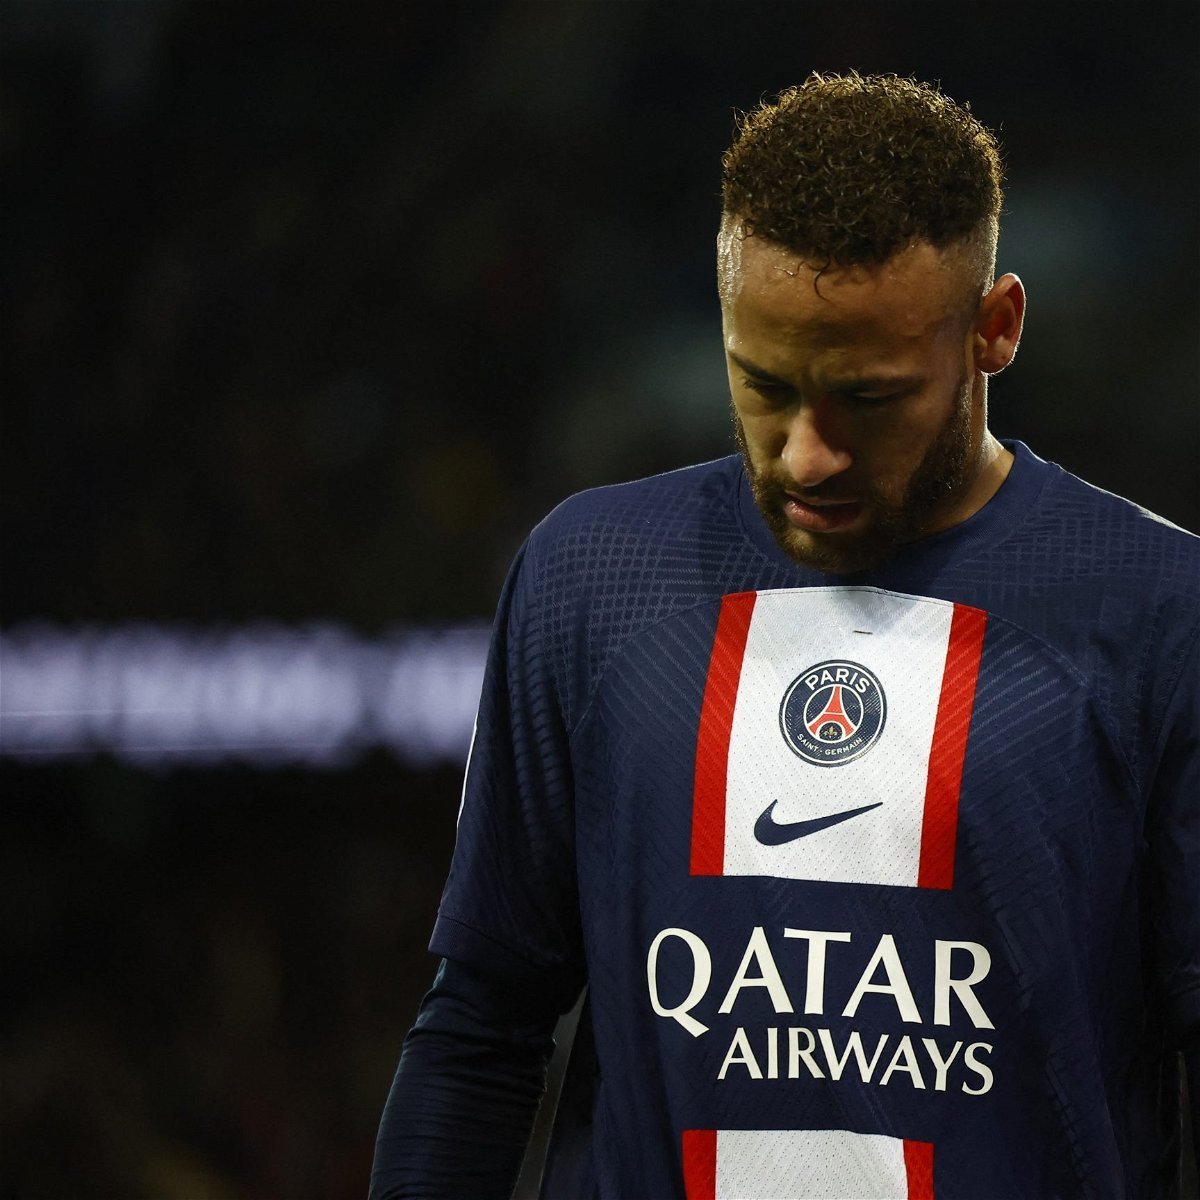 Vaiado pela expulsão, Neymar deixou o estádio do PSG antes do final da partida. Momento difícil